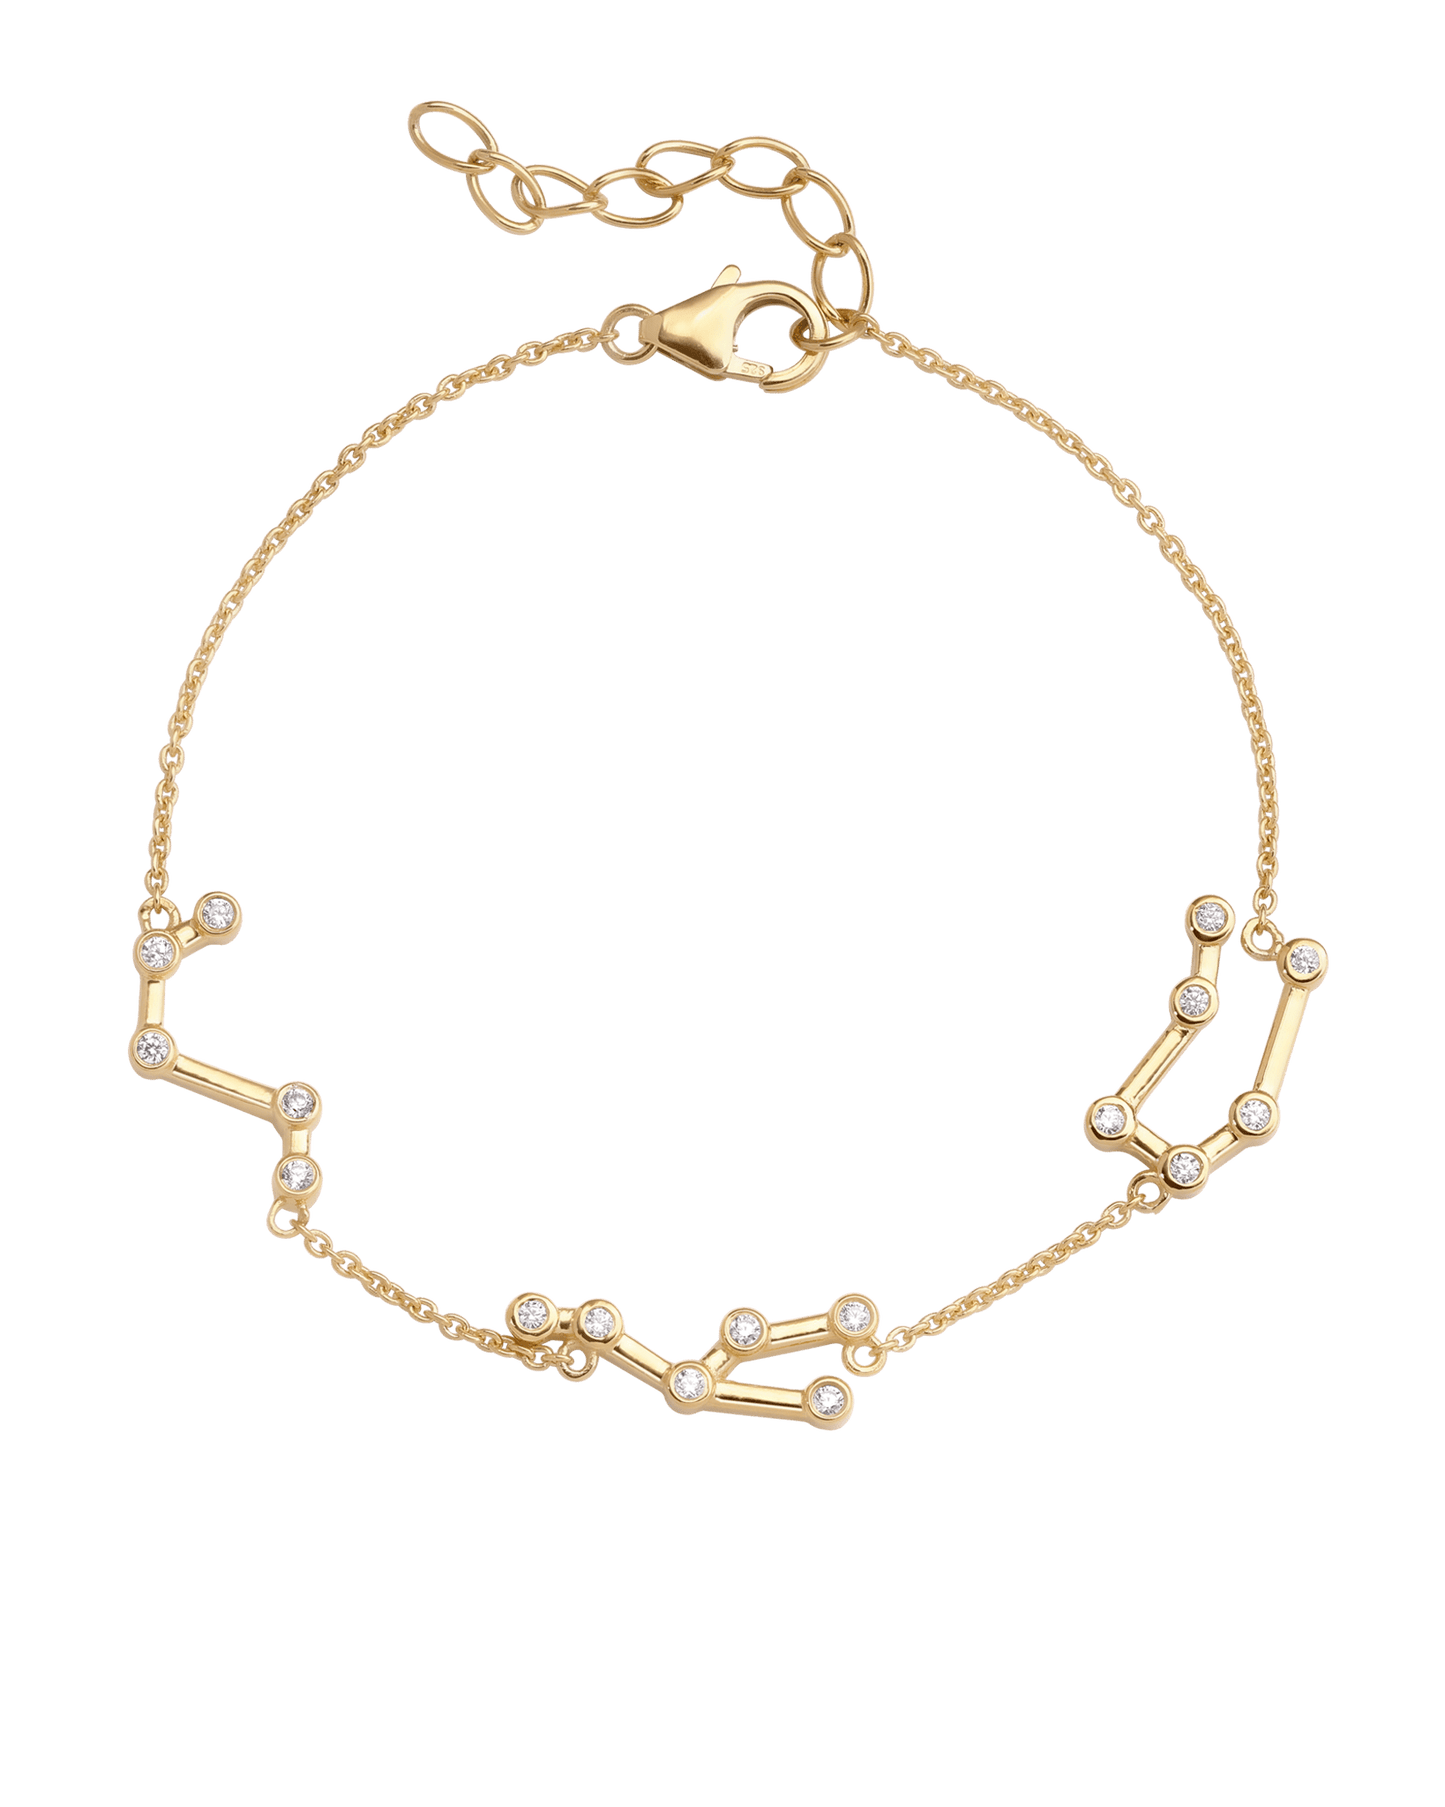 Constellation Bracelet - 925 Sterling Silver Bracelets magal-dev 